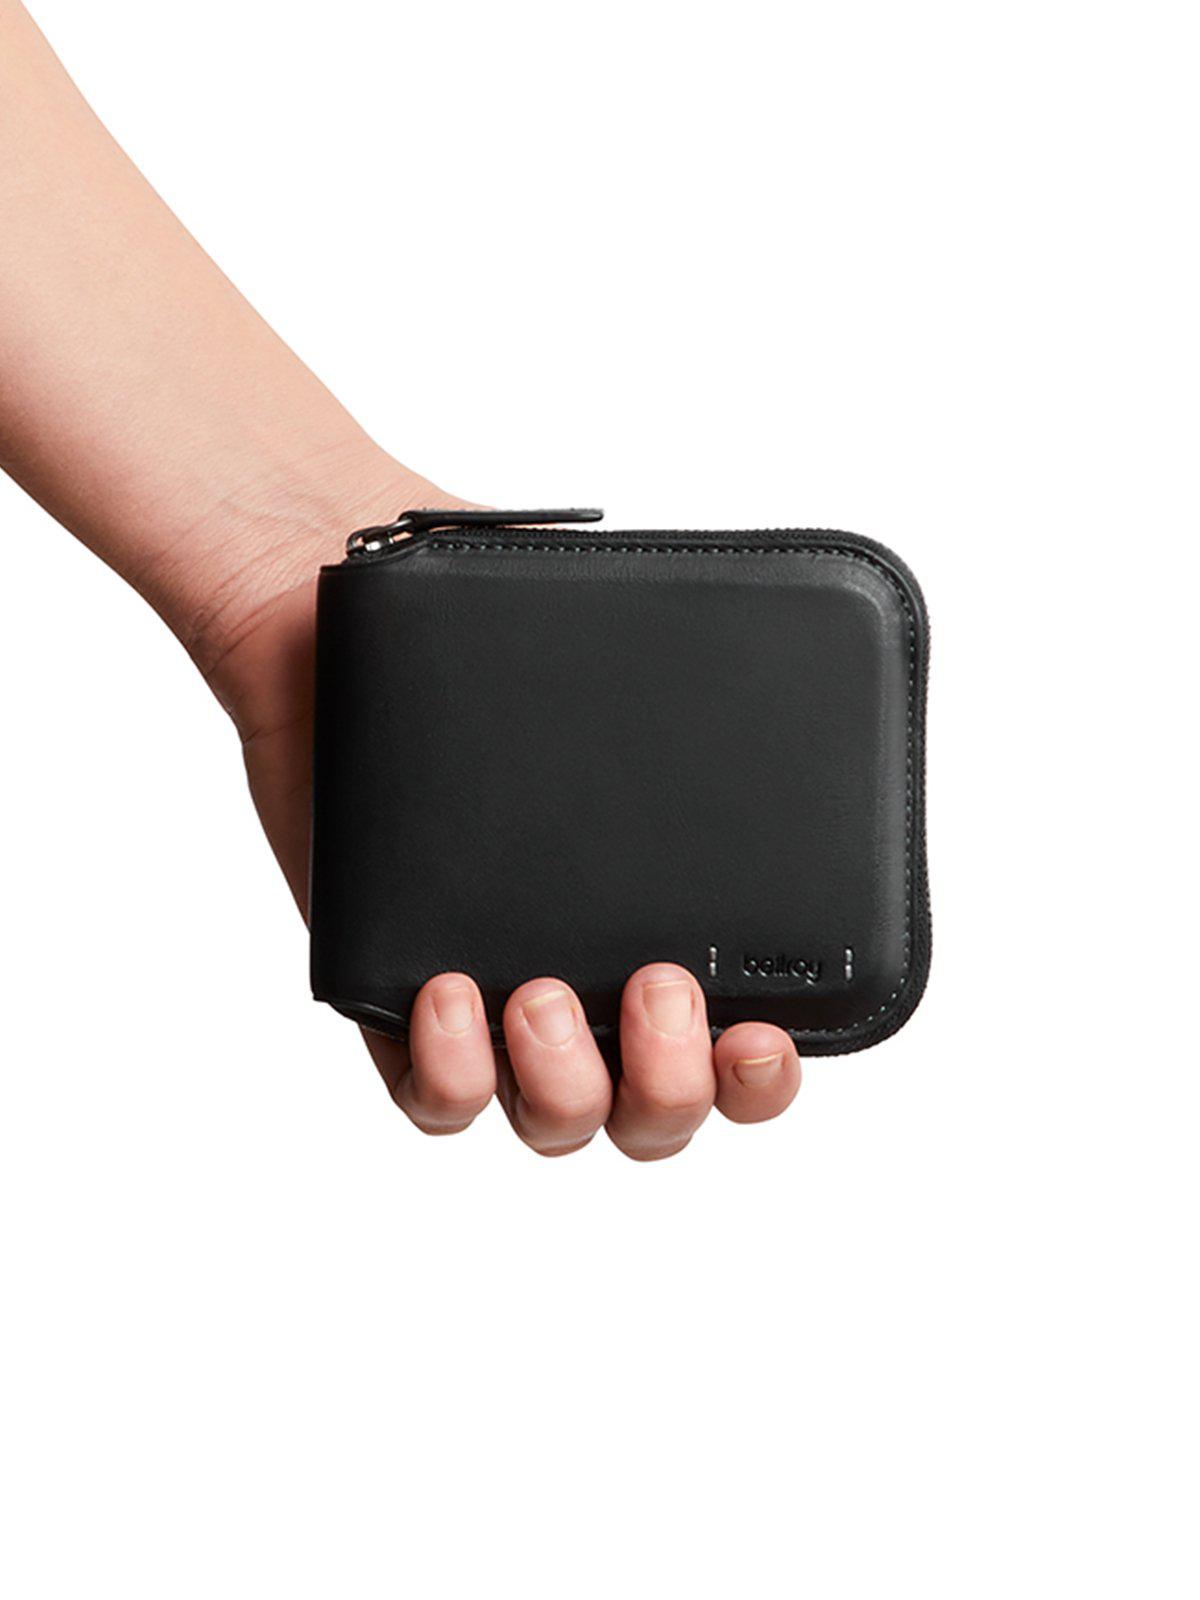 Bellroy Zip Wallet Premium Edition Black RFID